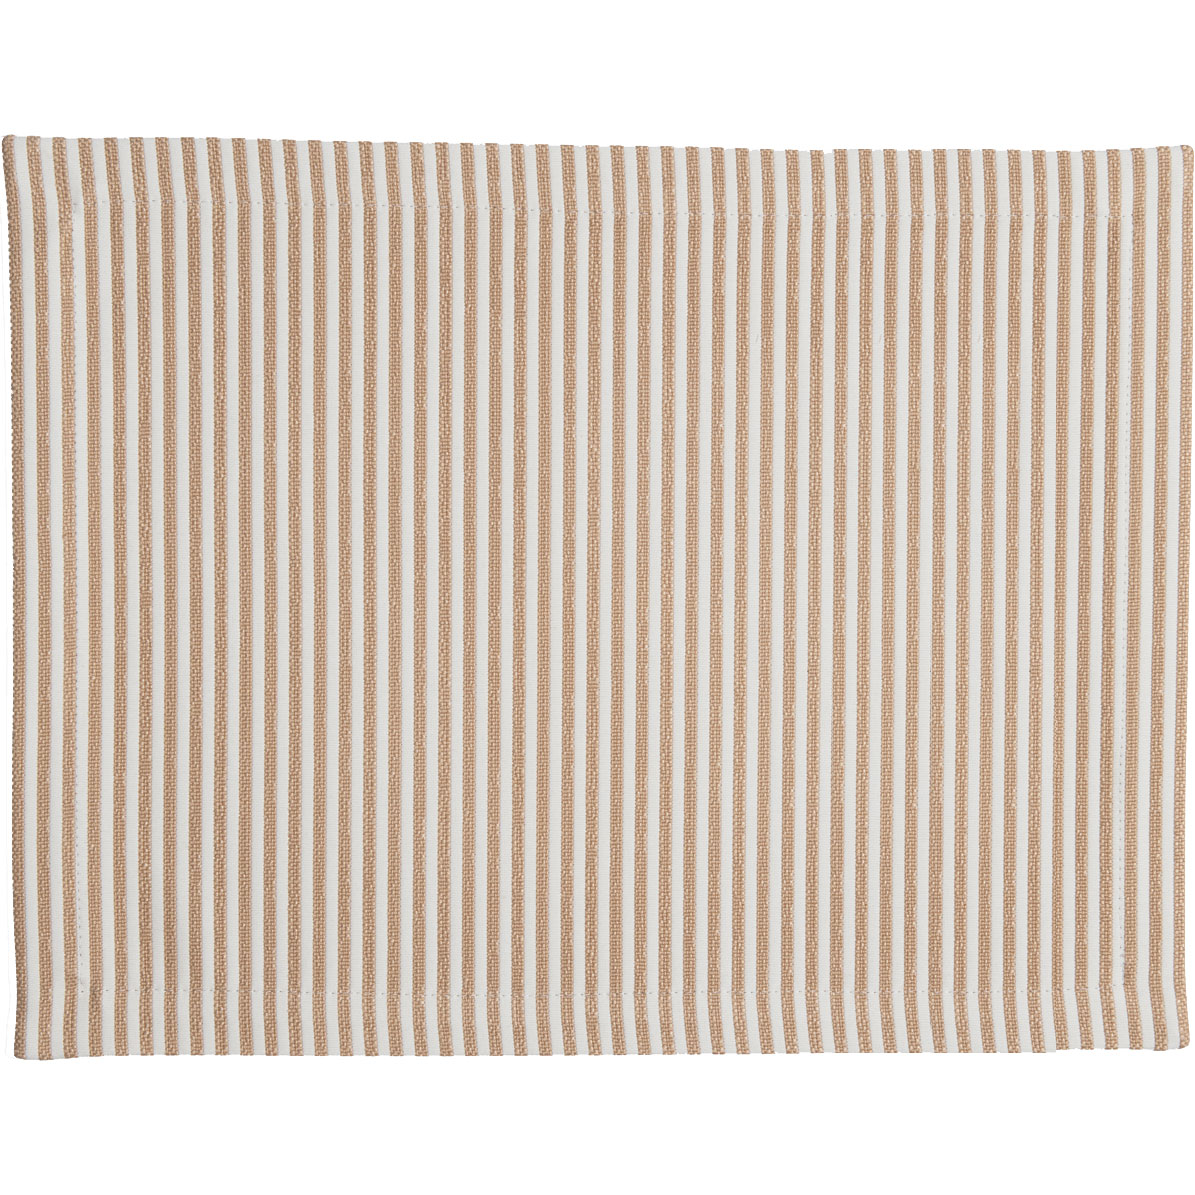 Narrow Stripe Tischset 35x45 cm, Beige